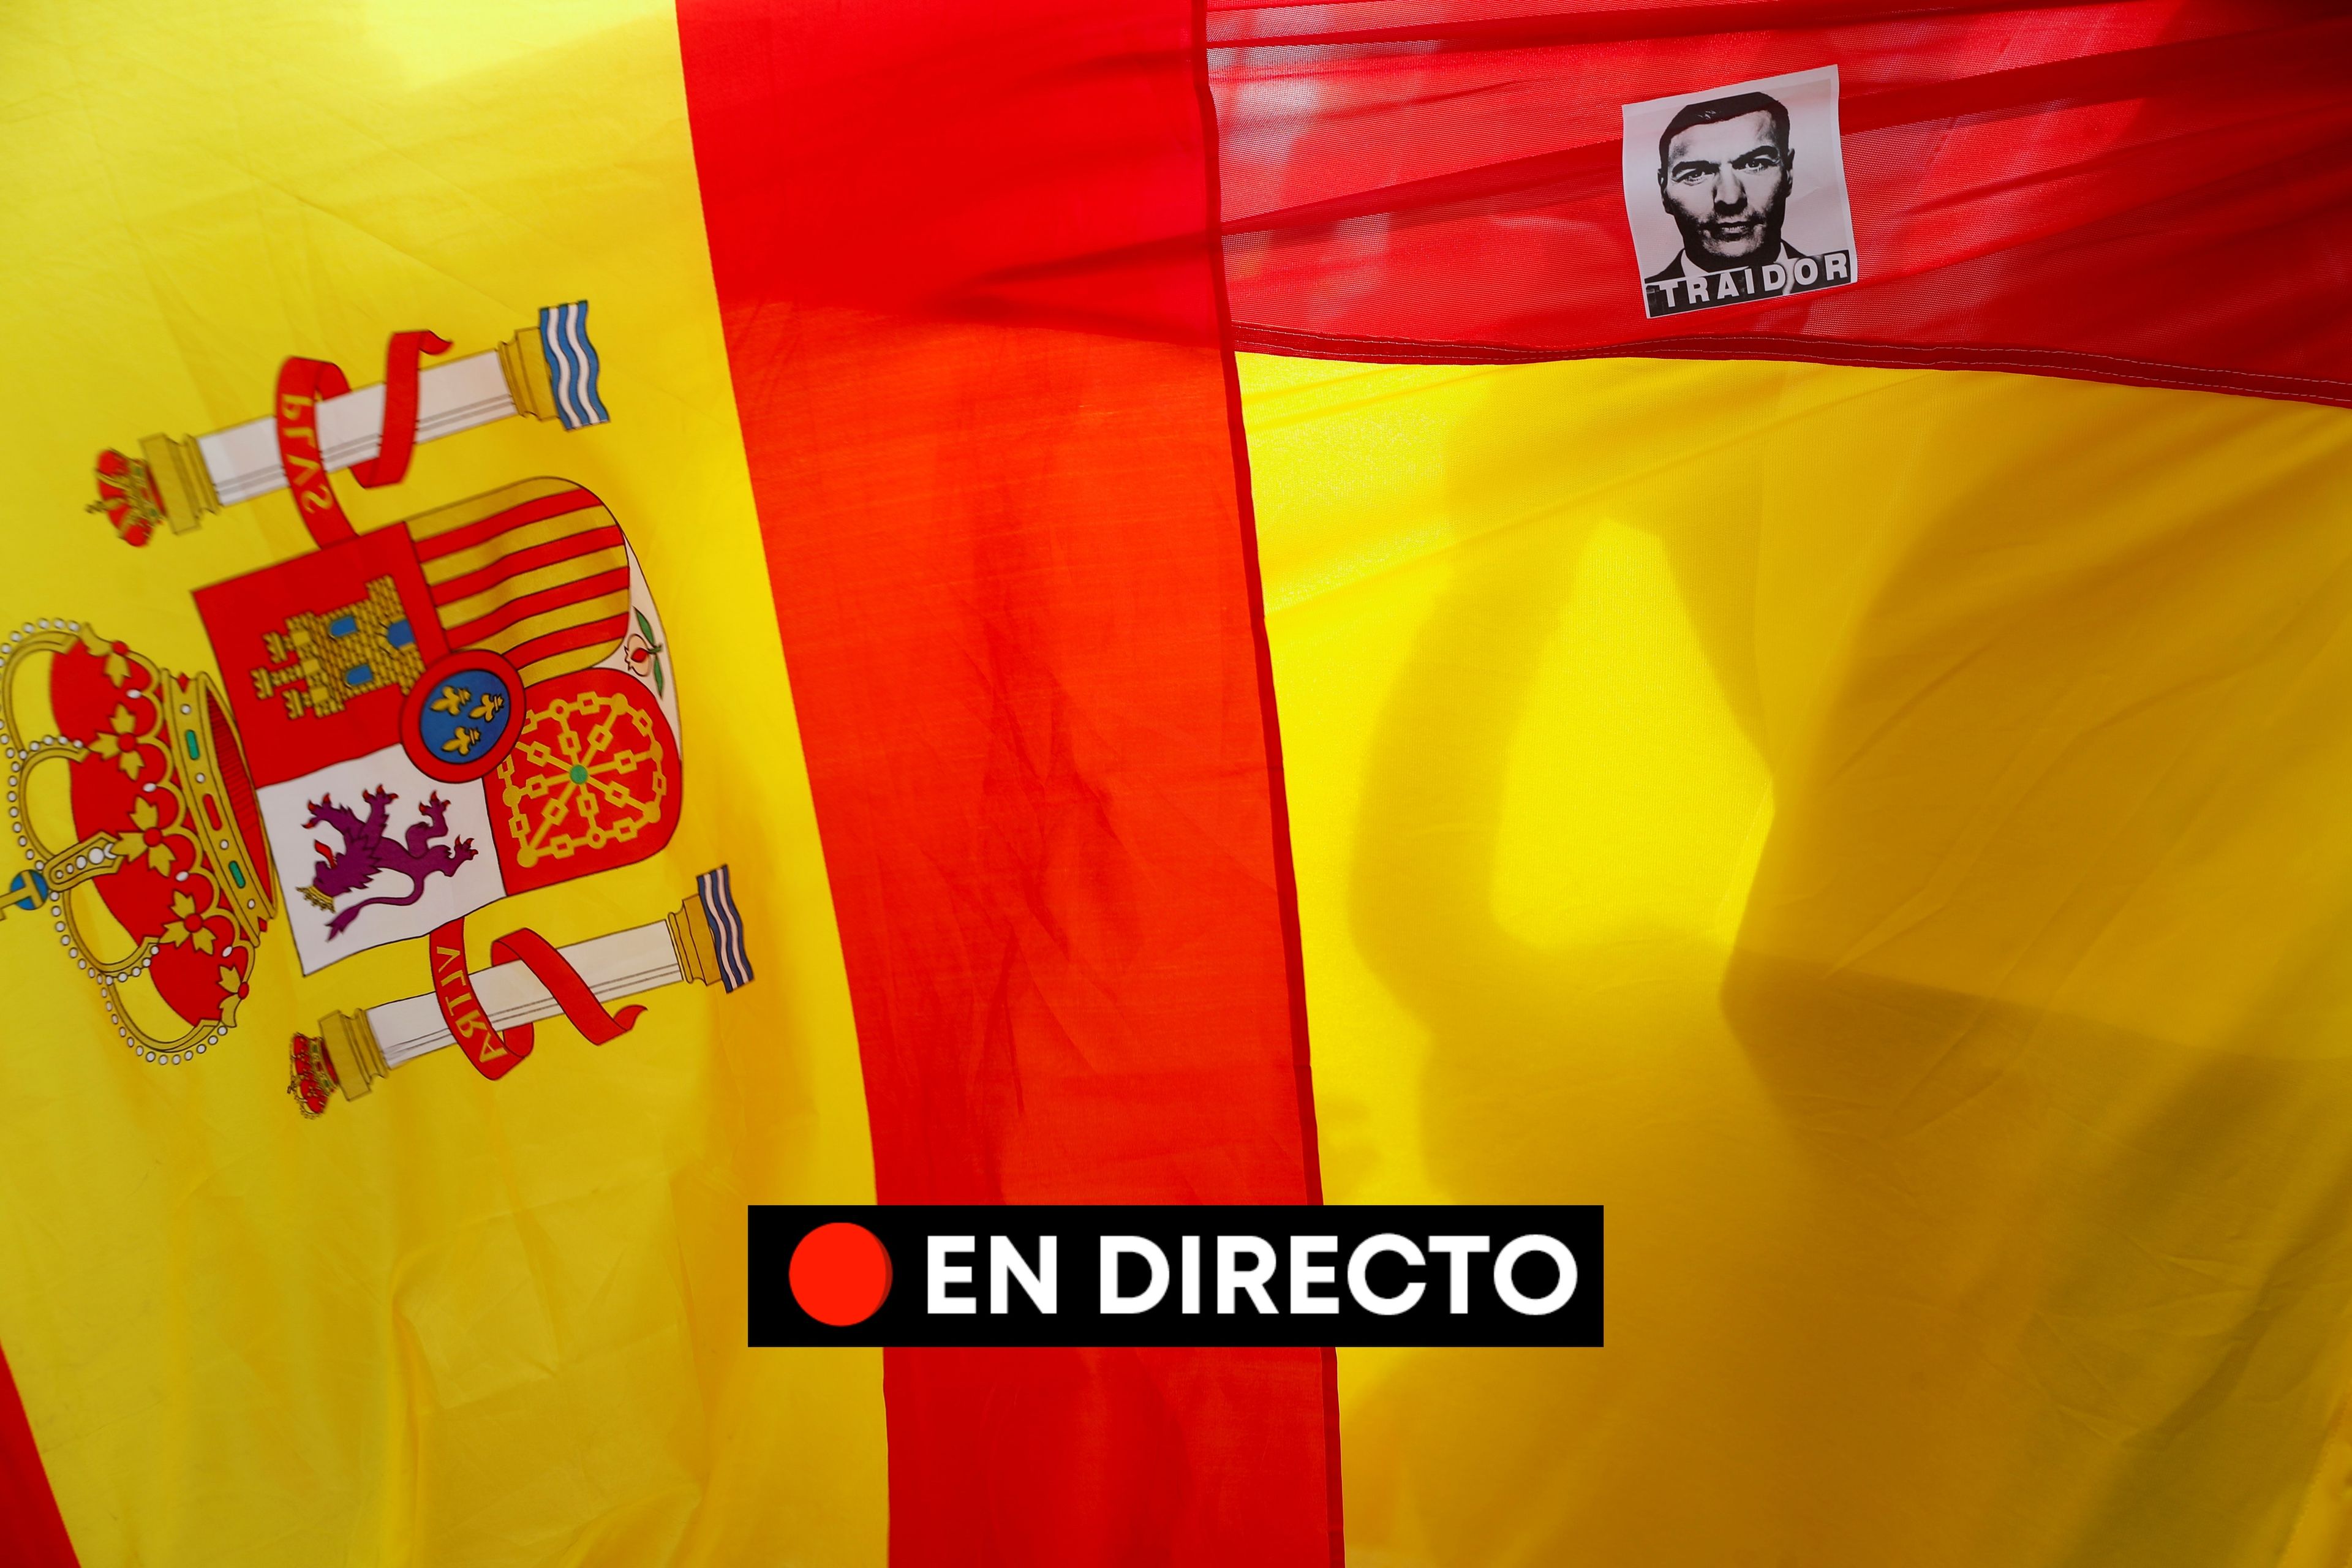 La posible dimisión de Pedro Sánchez, en directo